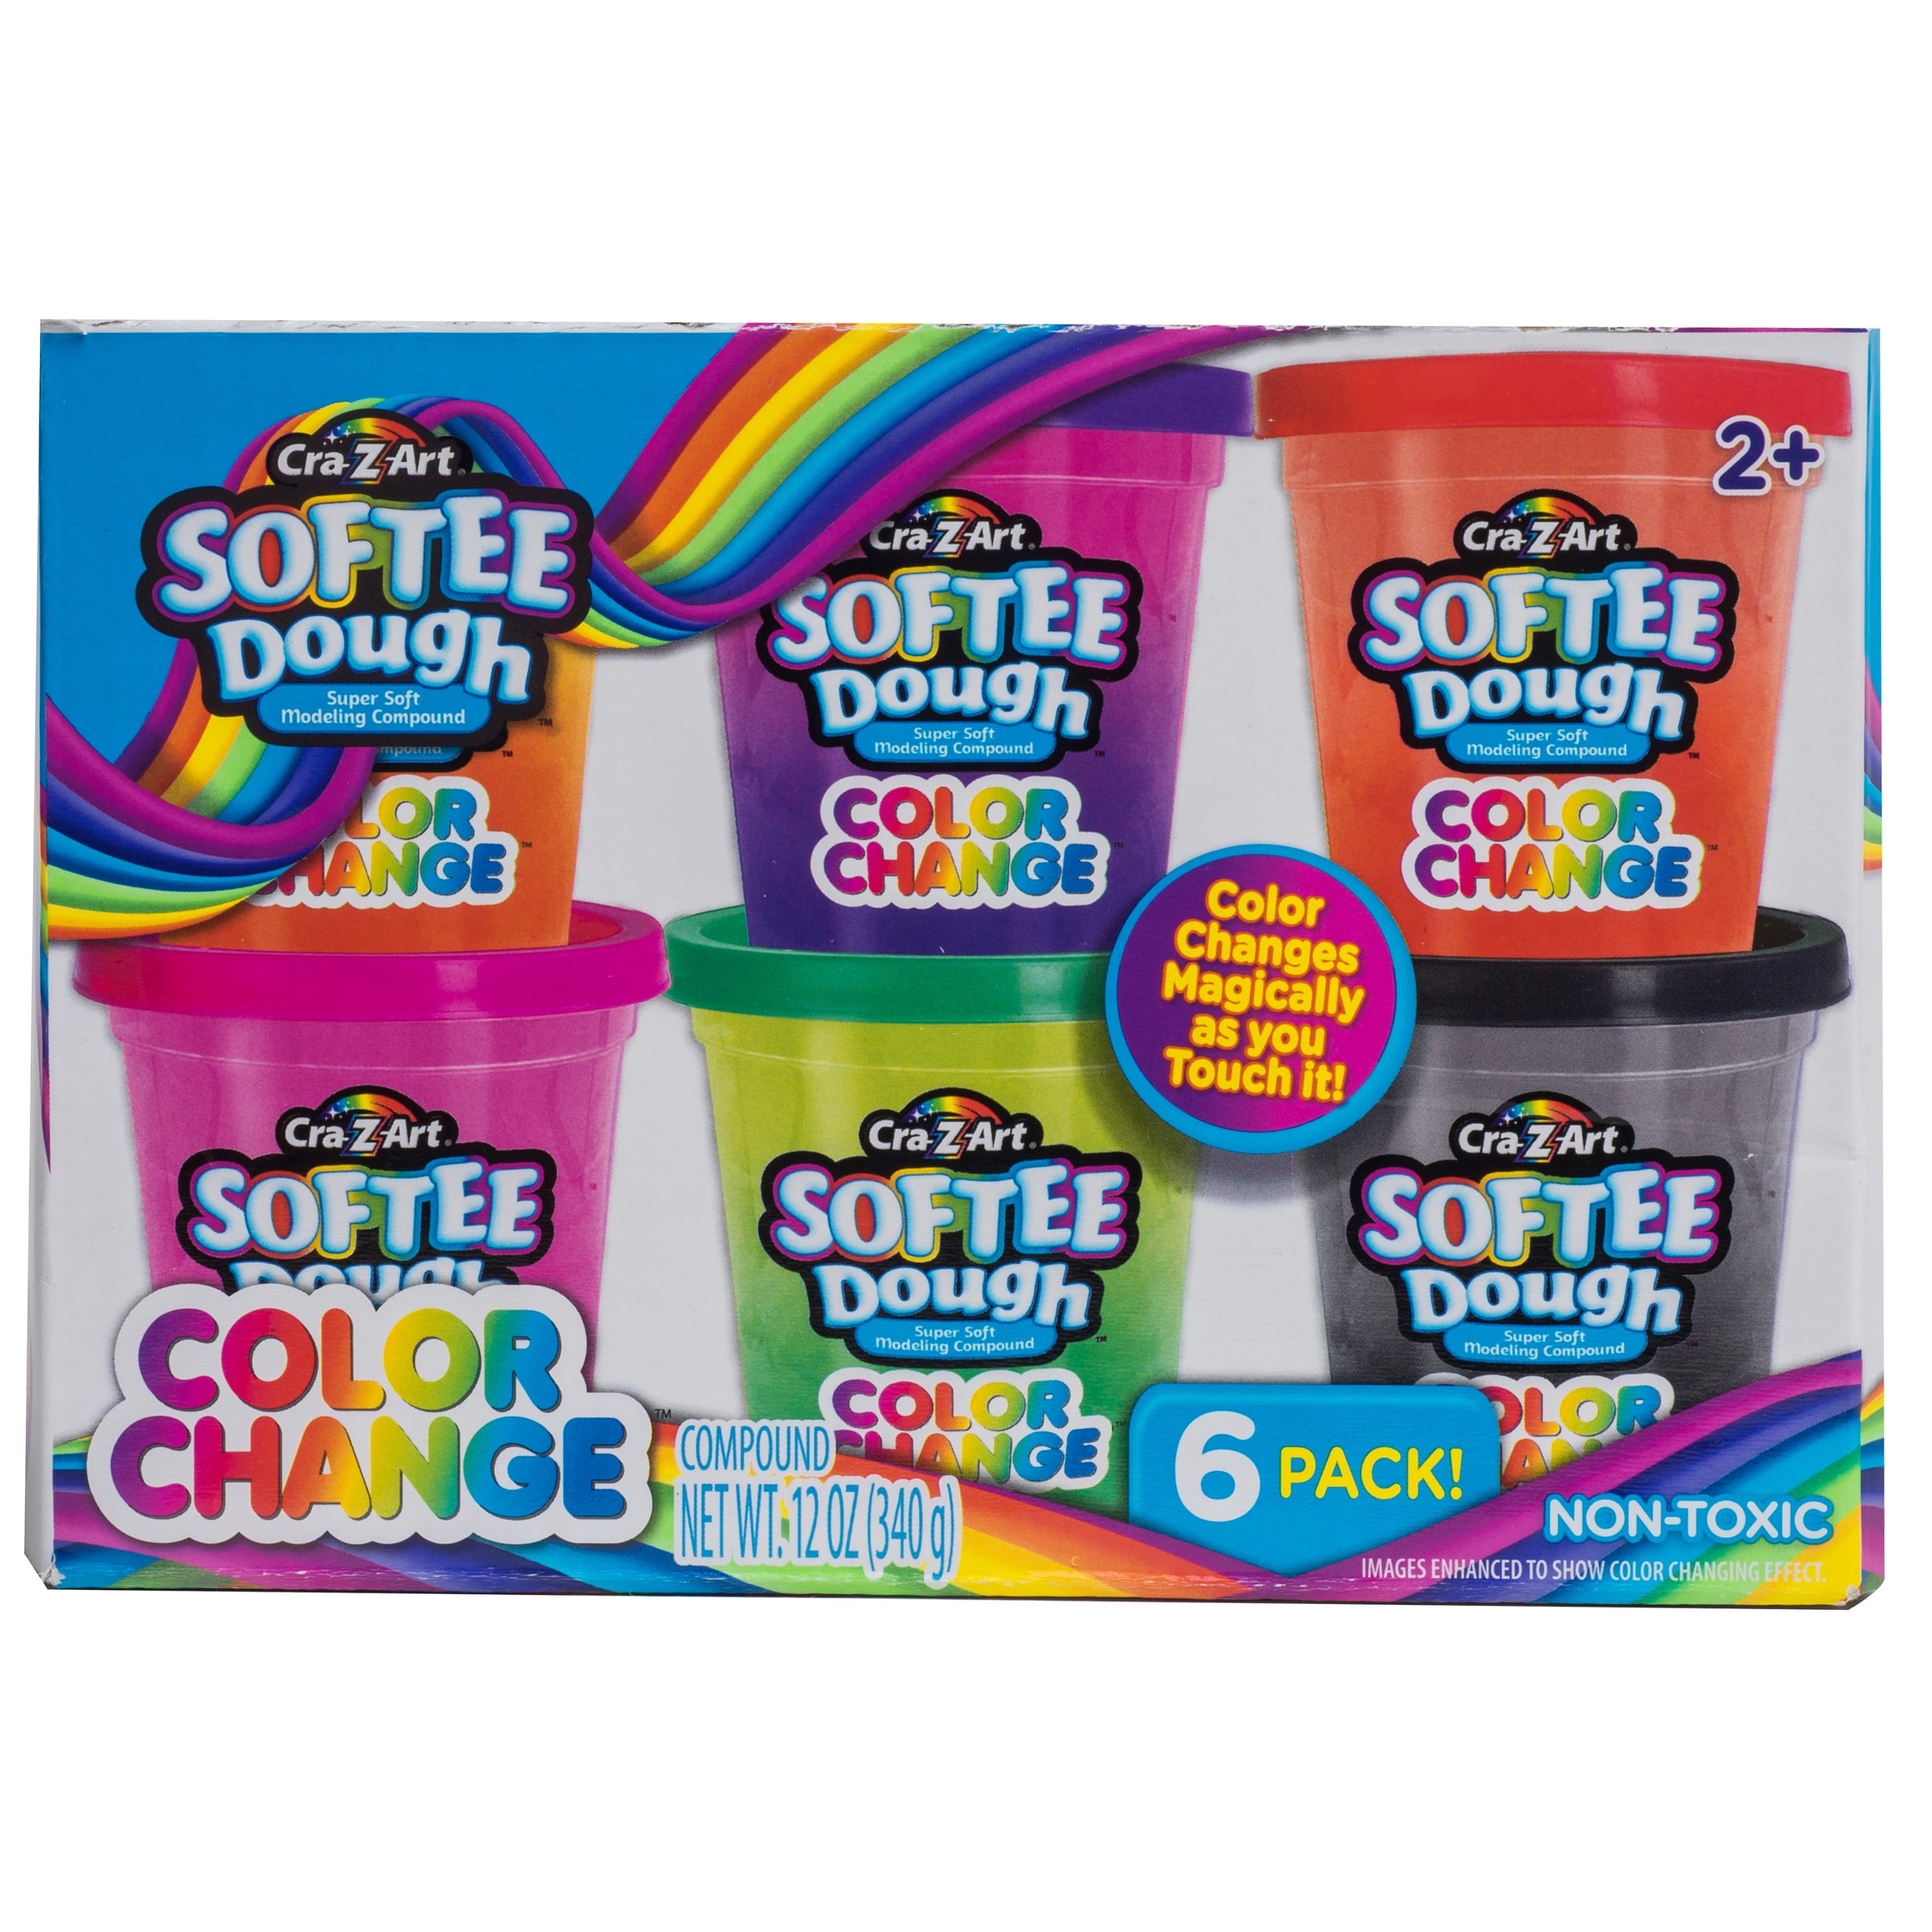 Cra-Z-Art Softee Dough Multicolor Change Dough 6 Pack